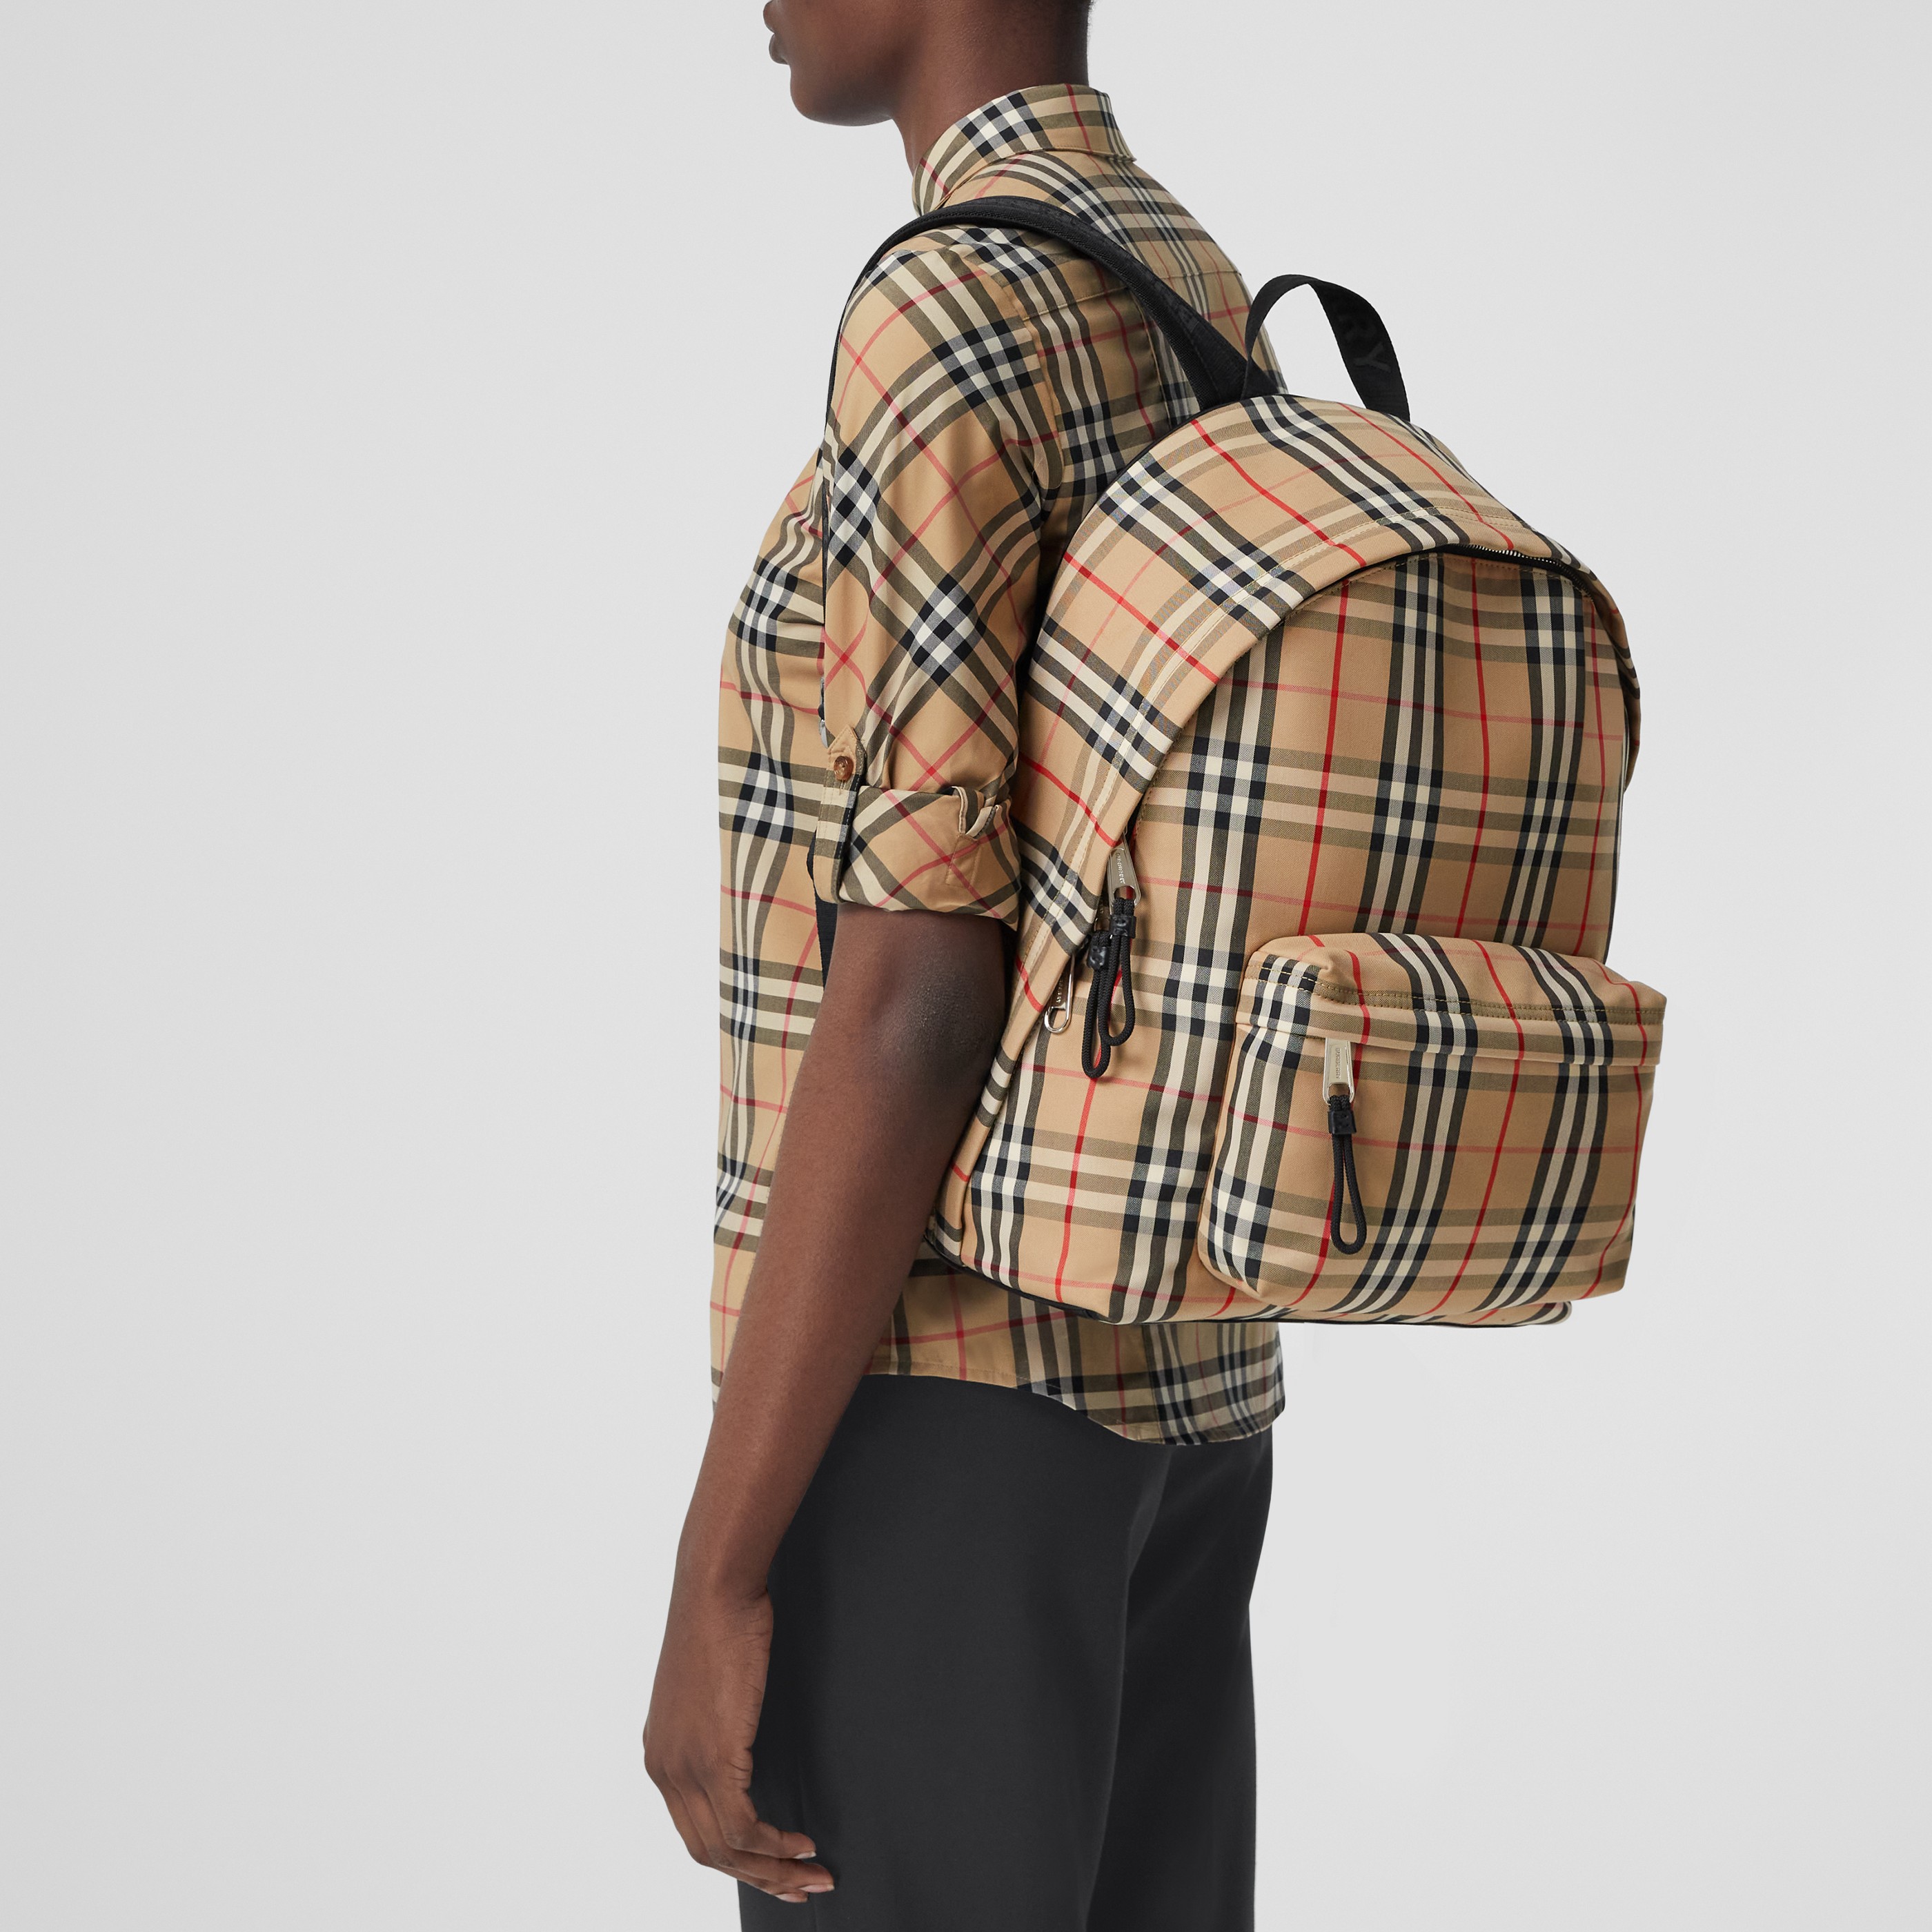 Herren Taschen Rucksäcke Sparen Sie 8% Burberry Segeltuch Rucksack aus Nylon mit Vintage Check-Muster für Herren 